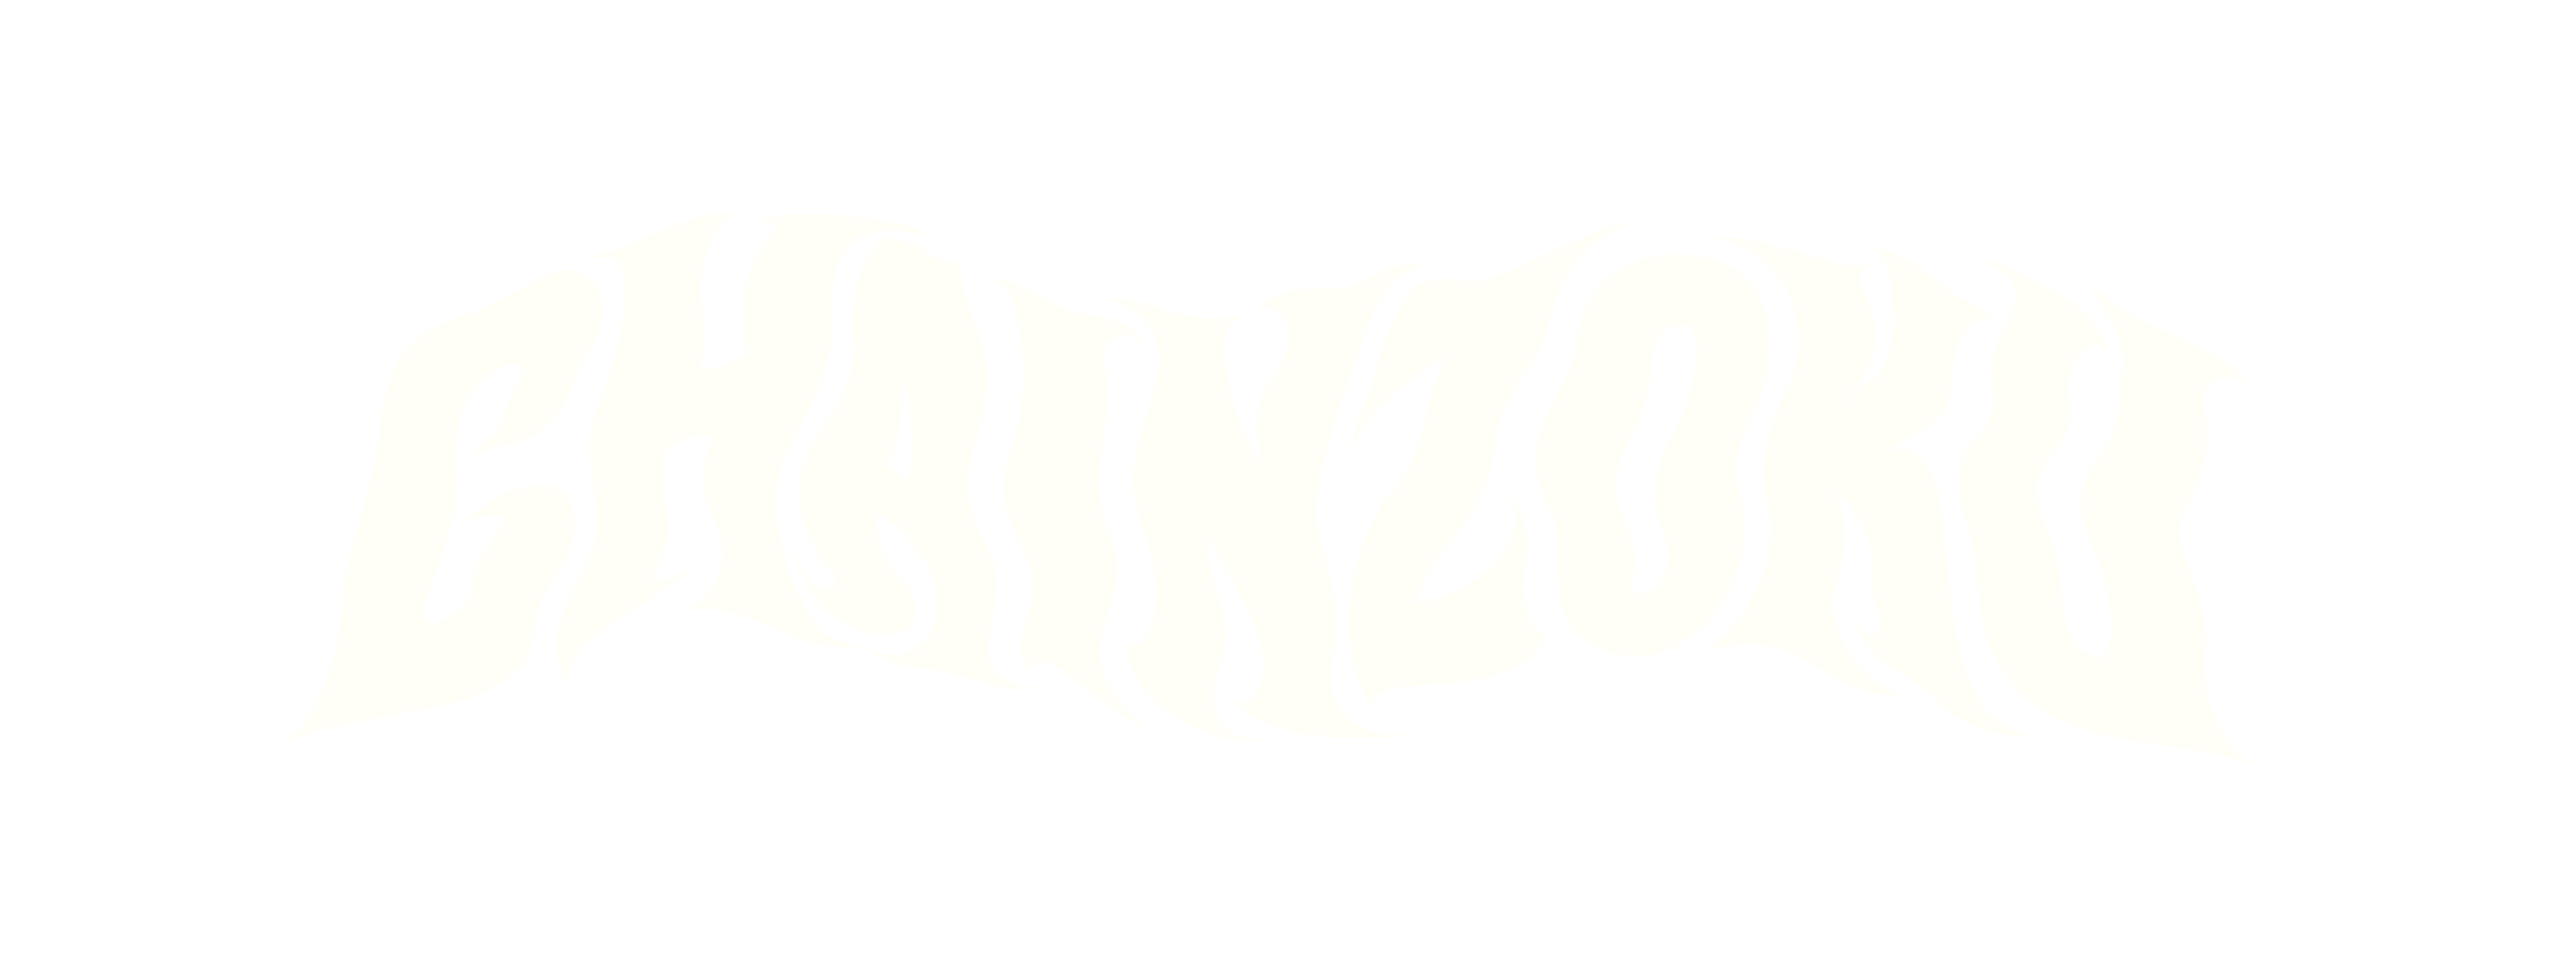 Chainzoku logo